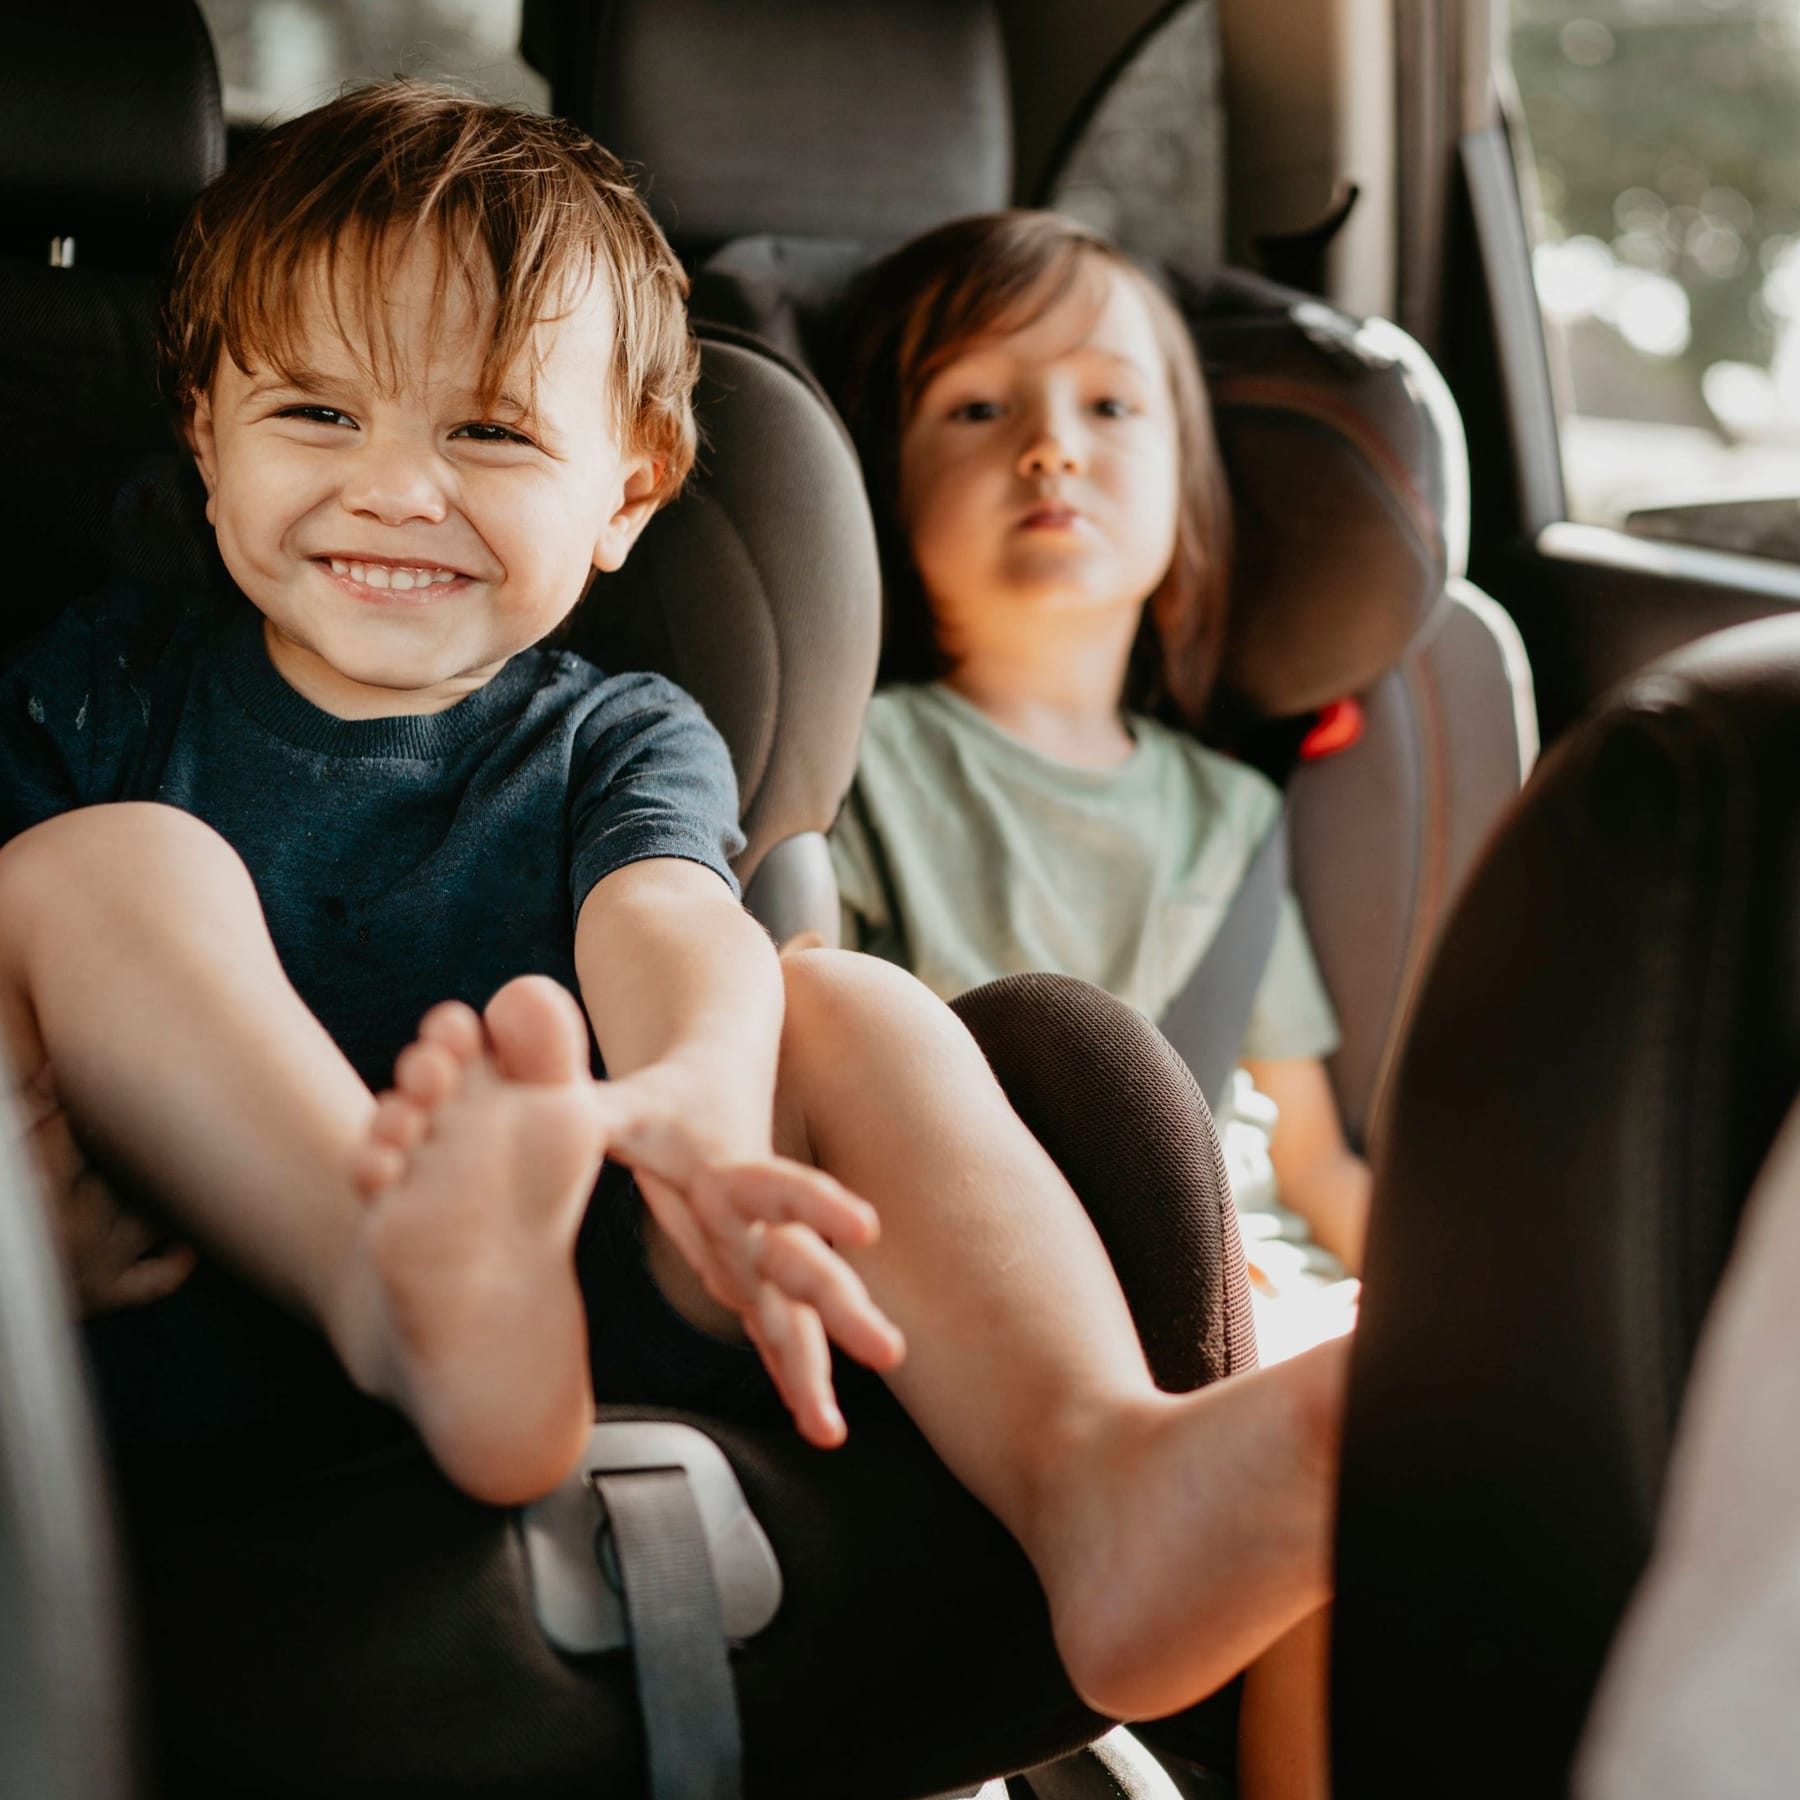 Kindersitz: Wo ist der sicherste Platz für Kinder im Auto?